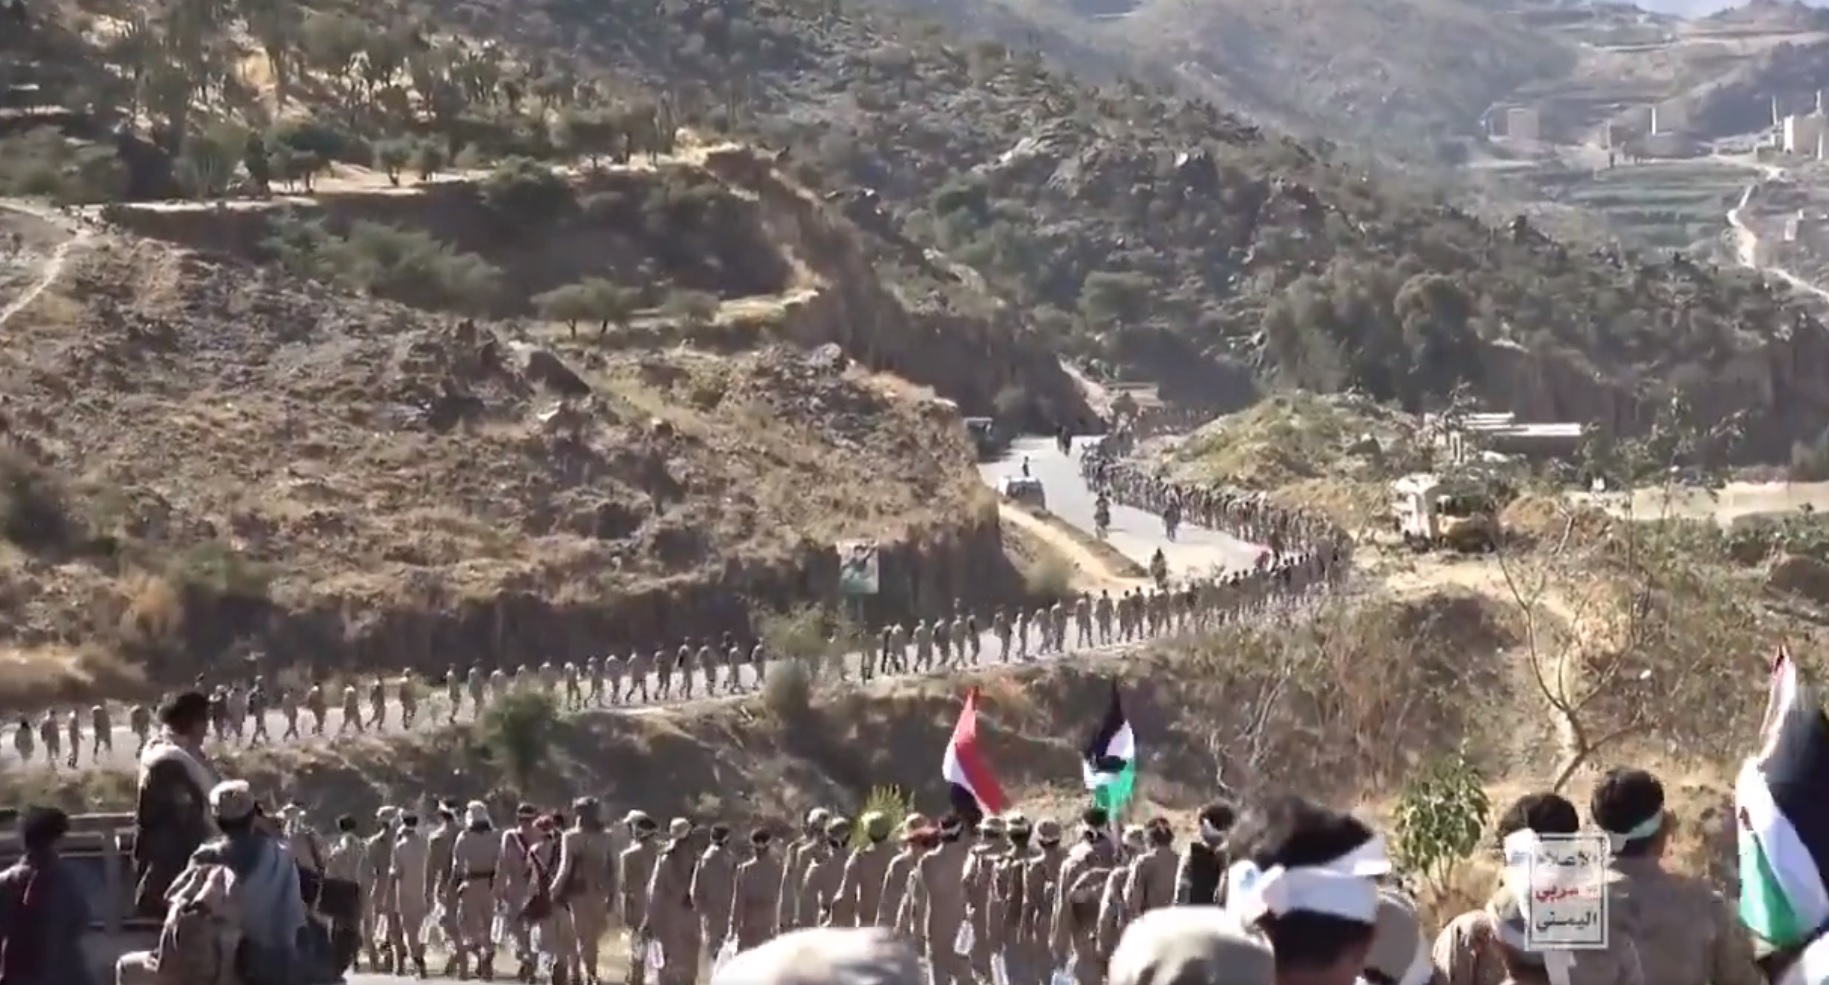 Siap Bantu Palestina, 10 Ribu Pasukan Houthi Mulai Bergerak ke Perbatasan Israel